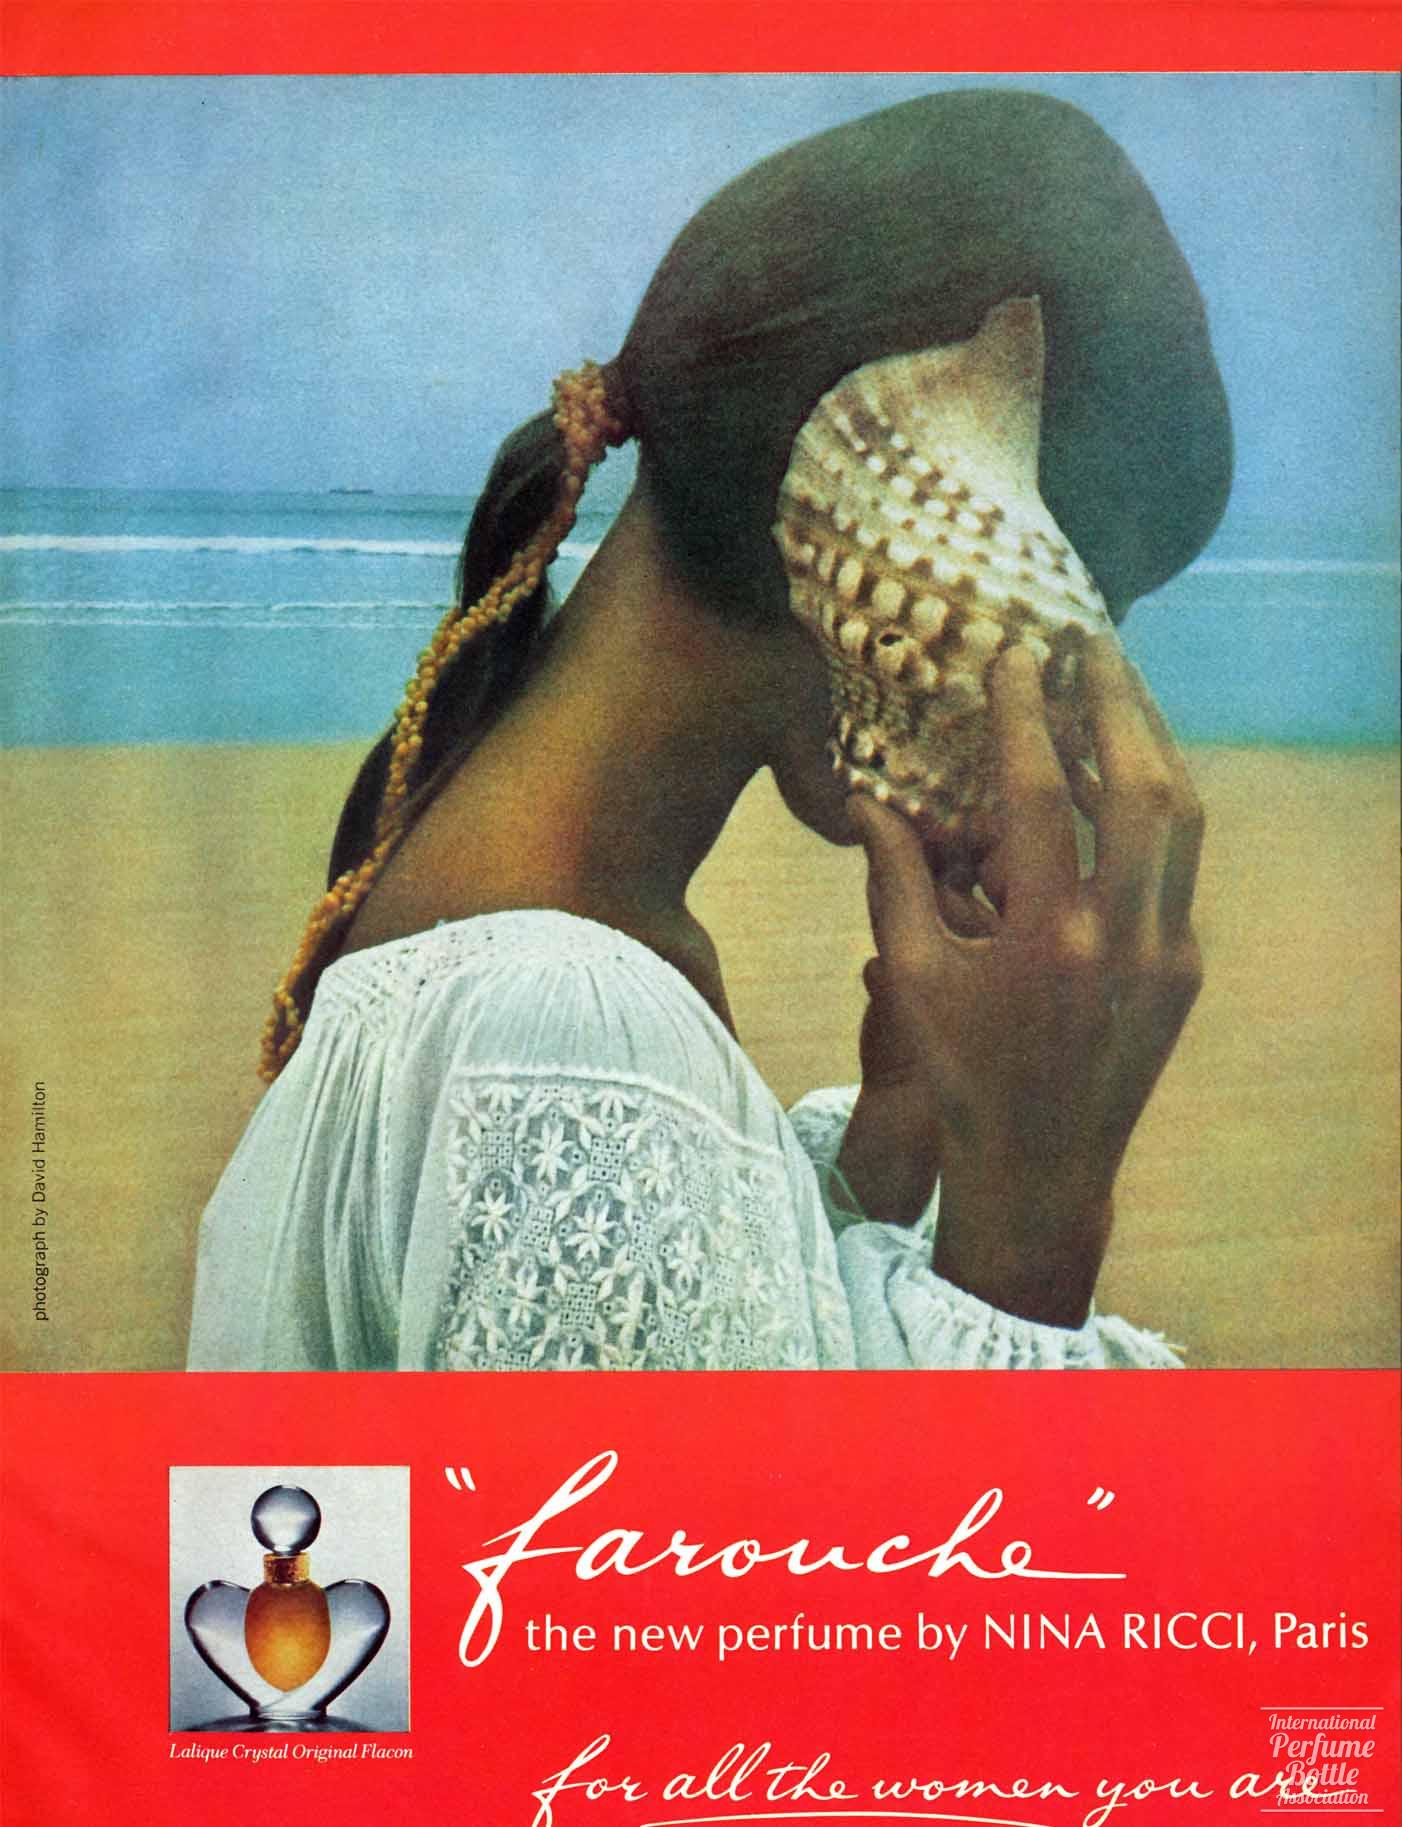 "Farouche" by Nina Ricci Advertisement - 1974